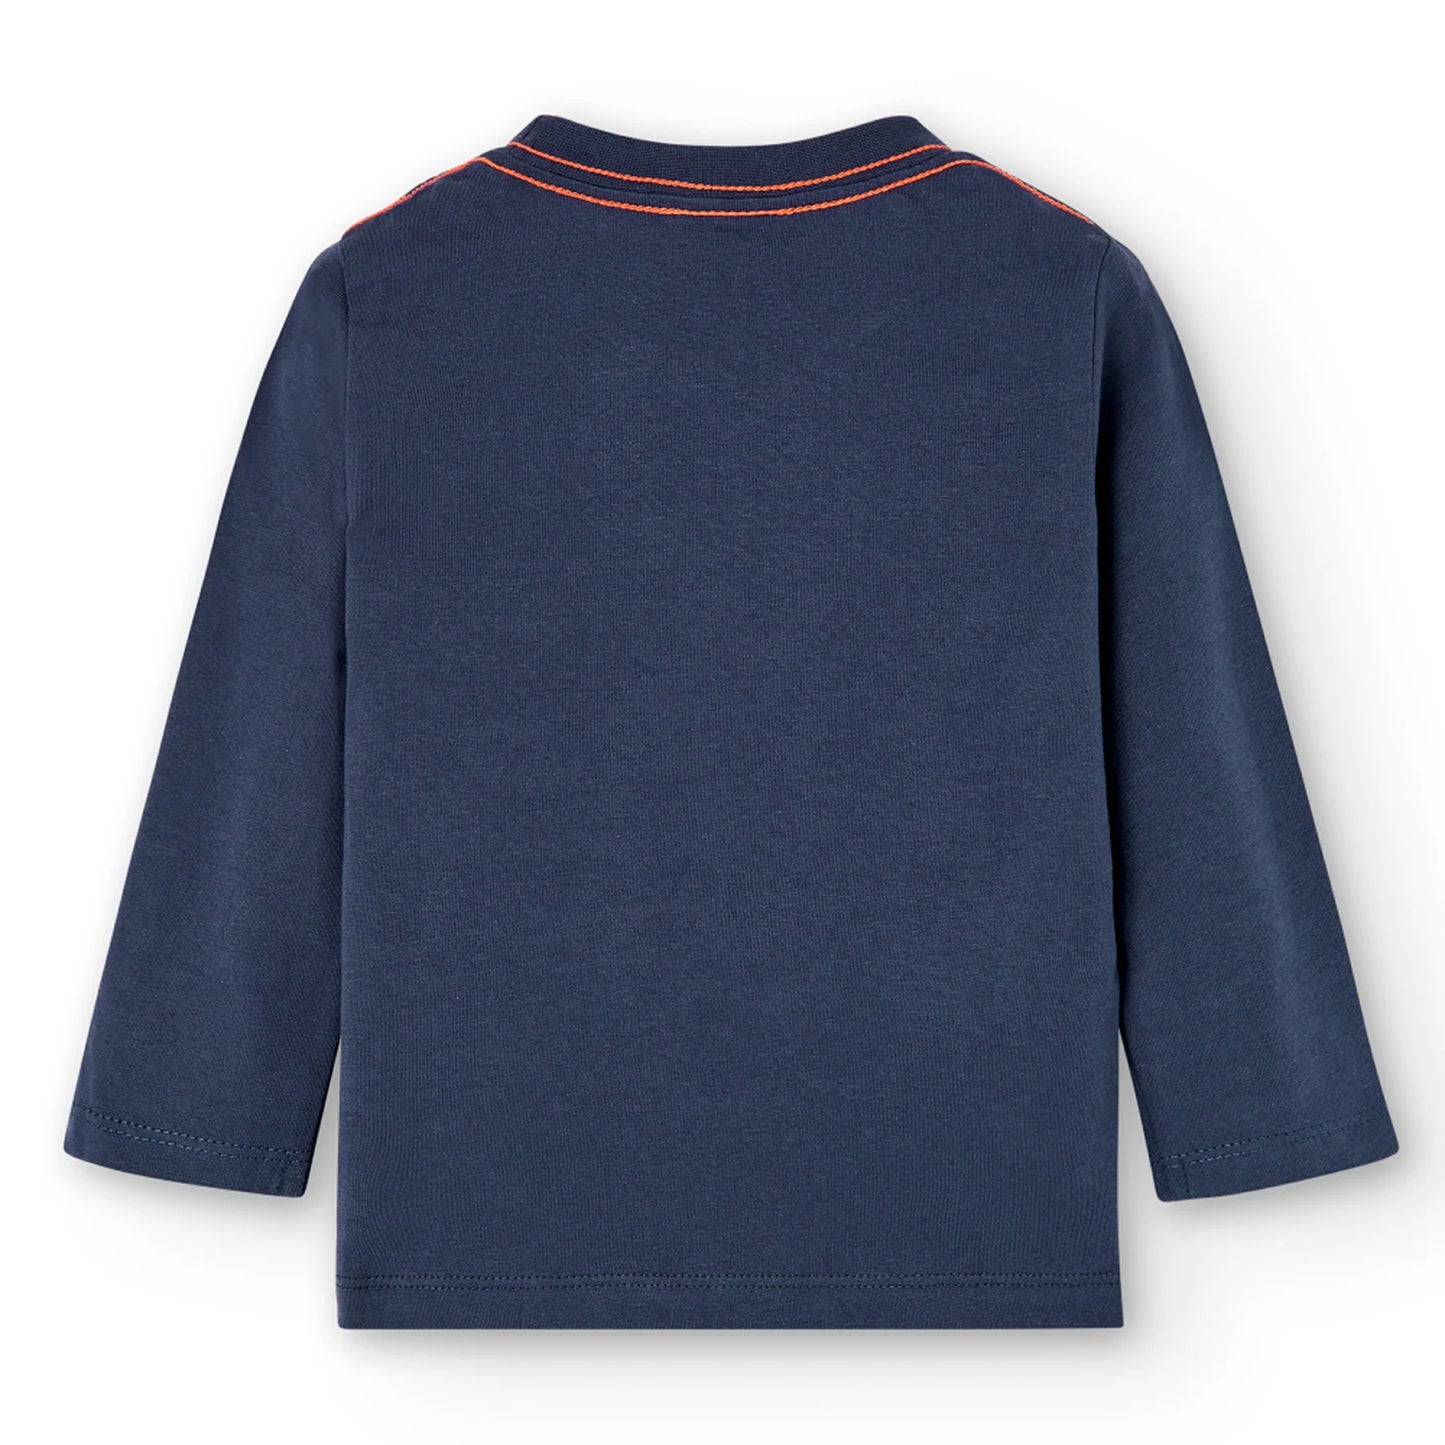 Boboli - Maglietta in cotone per bambino, blu marino